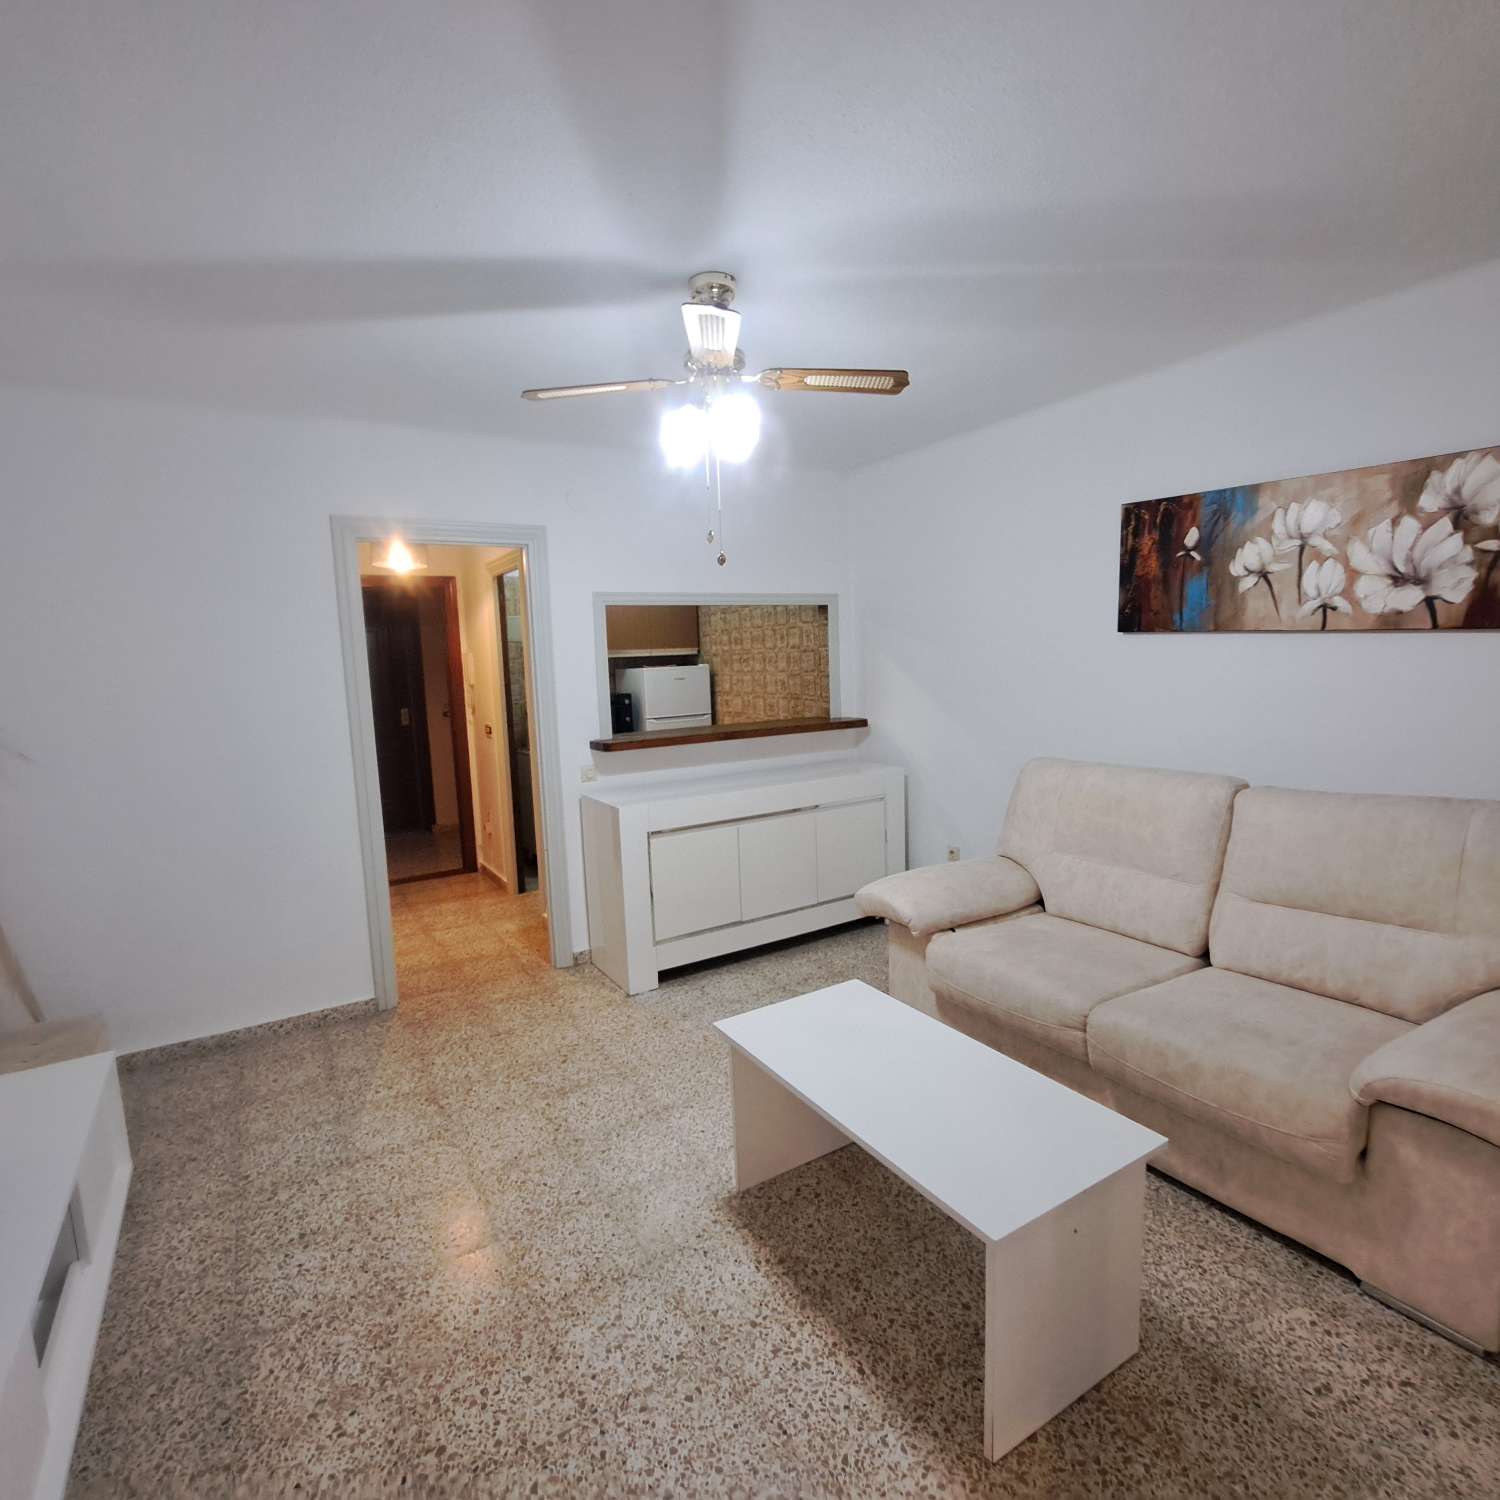 Bel appartement situé à 100 mètres de la plage de Ferrara (2ème ligne de plage)